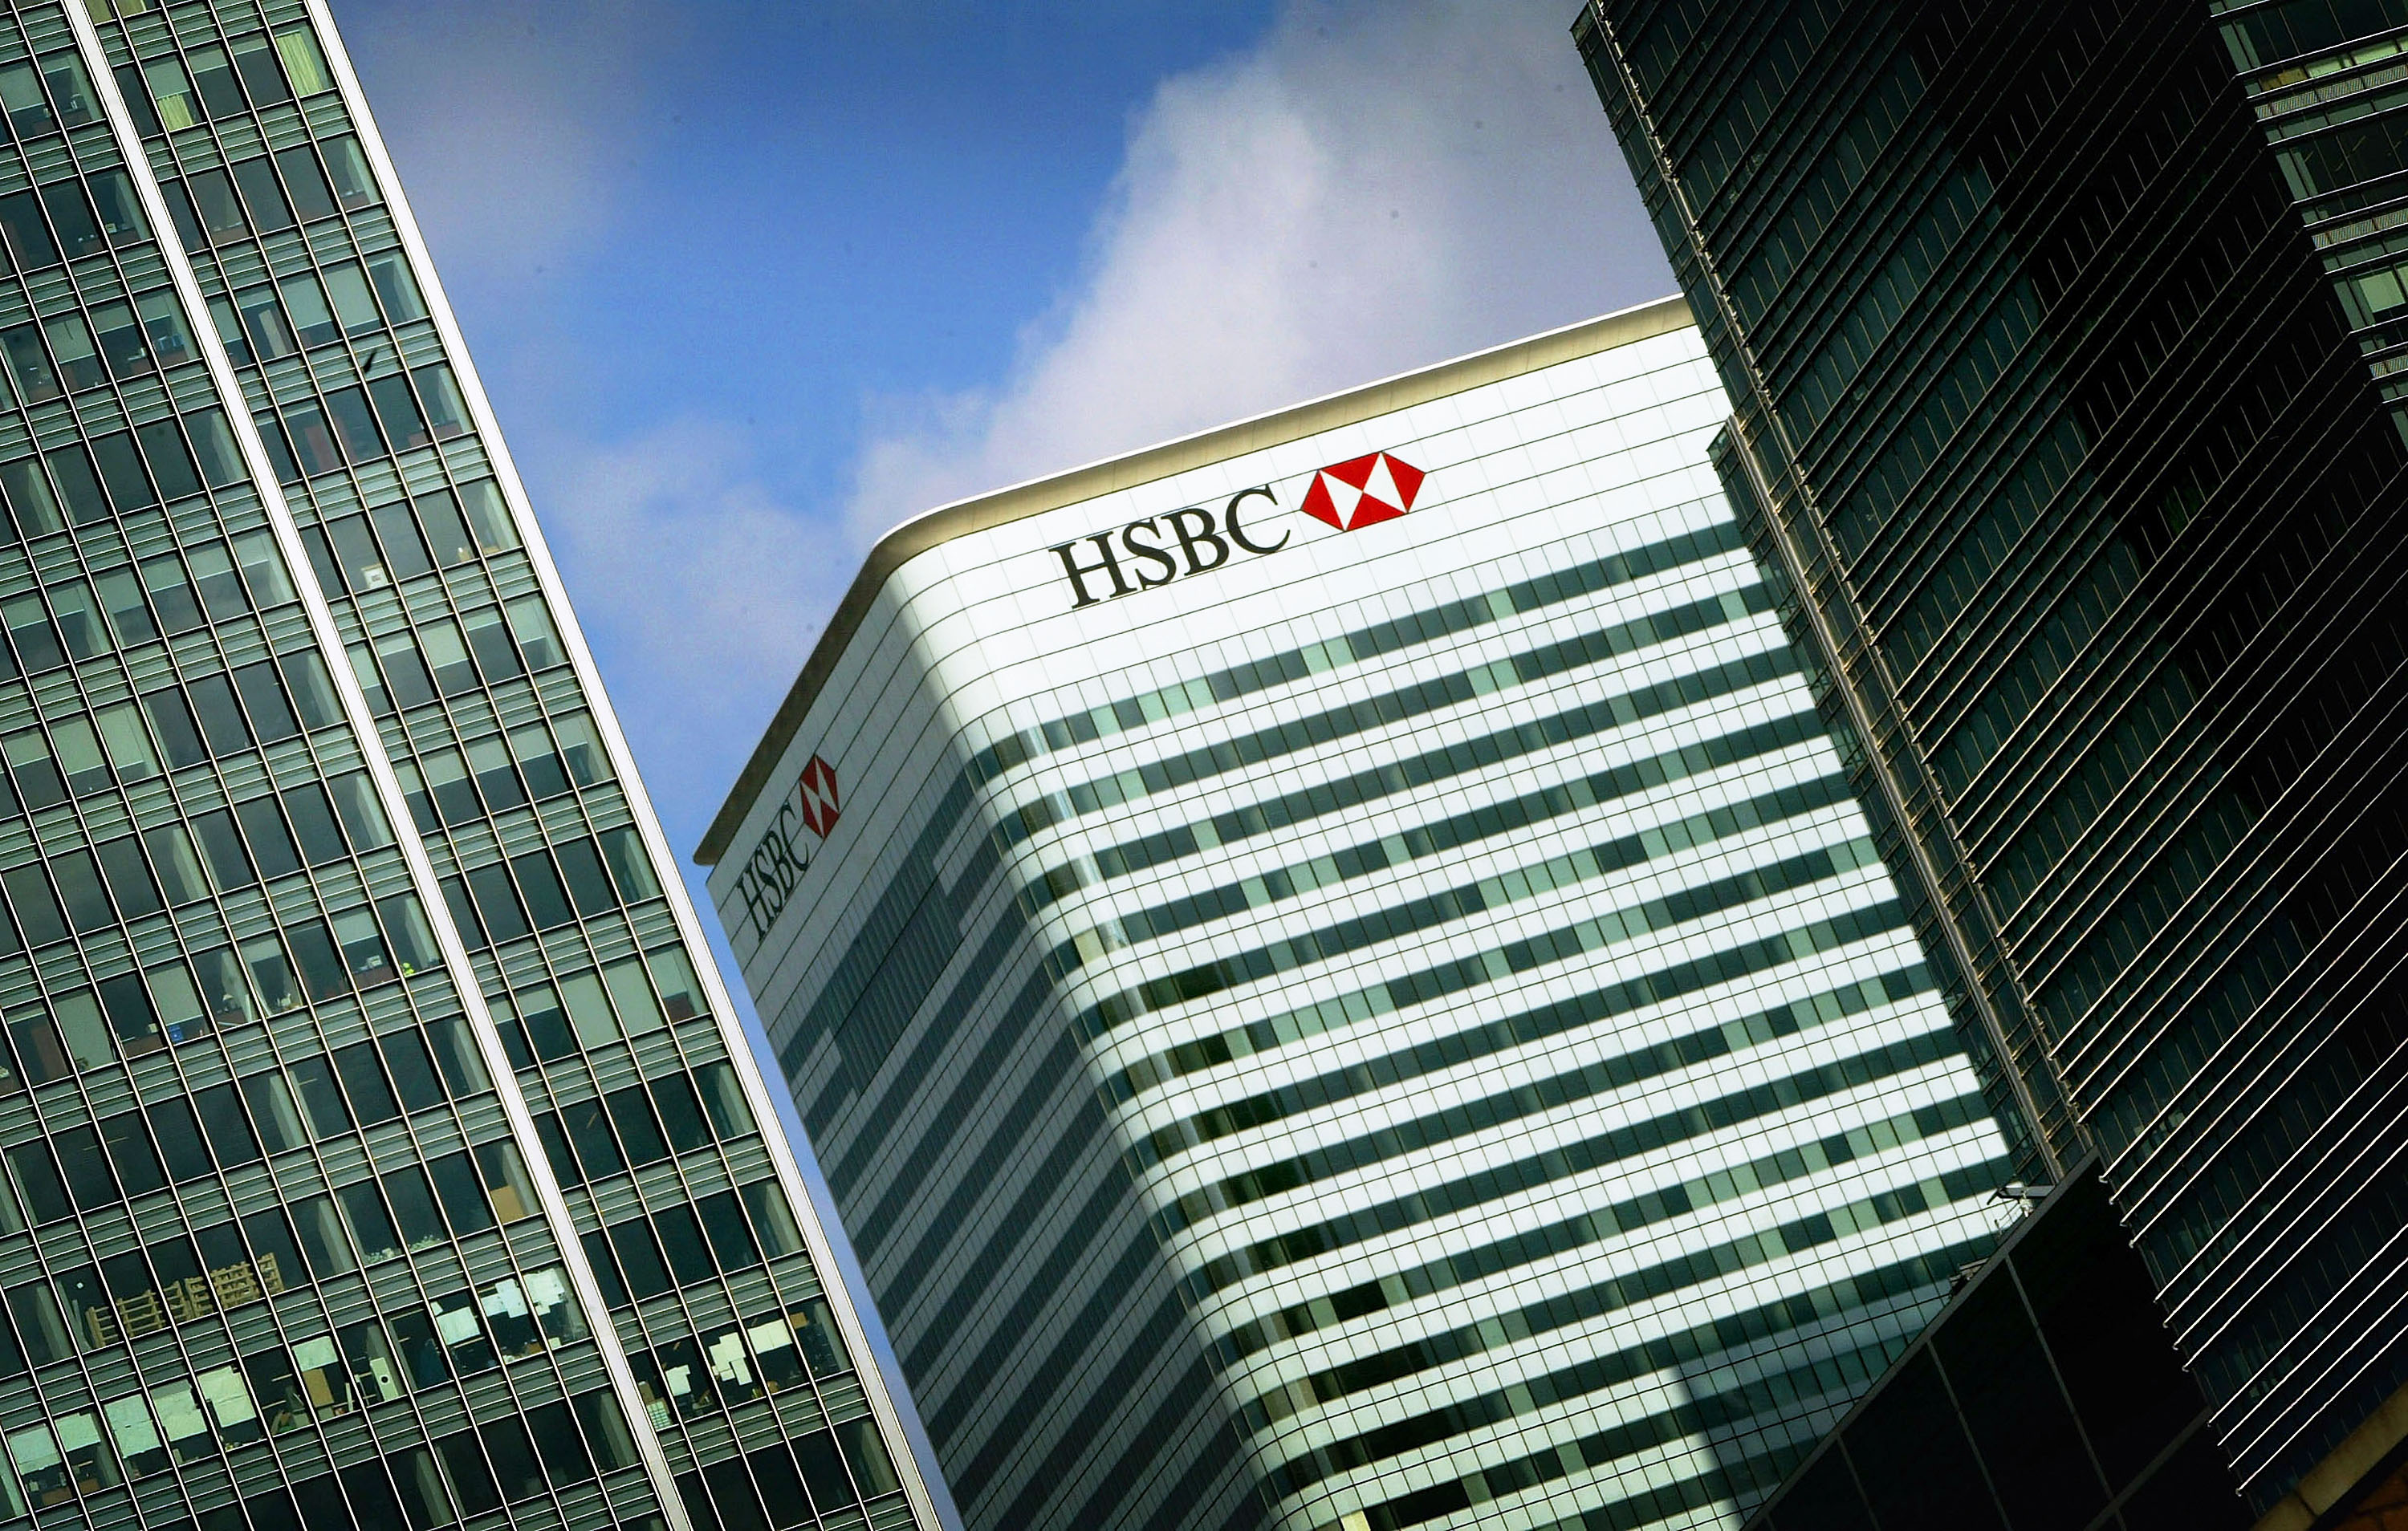 Ping an bank. HSBC Россия. Самый крупный банк Европы. Здание банка HSBC план. Британского банка HSBC Турция.